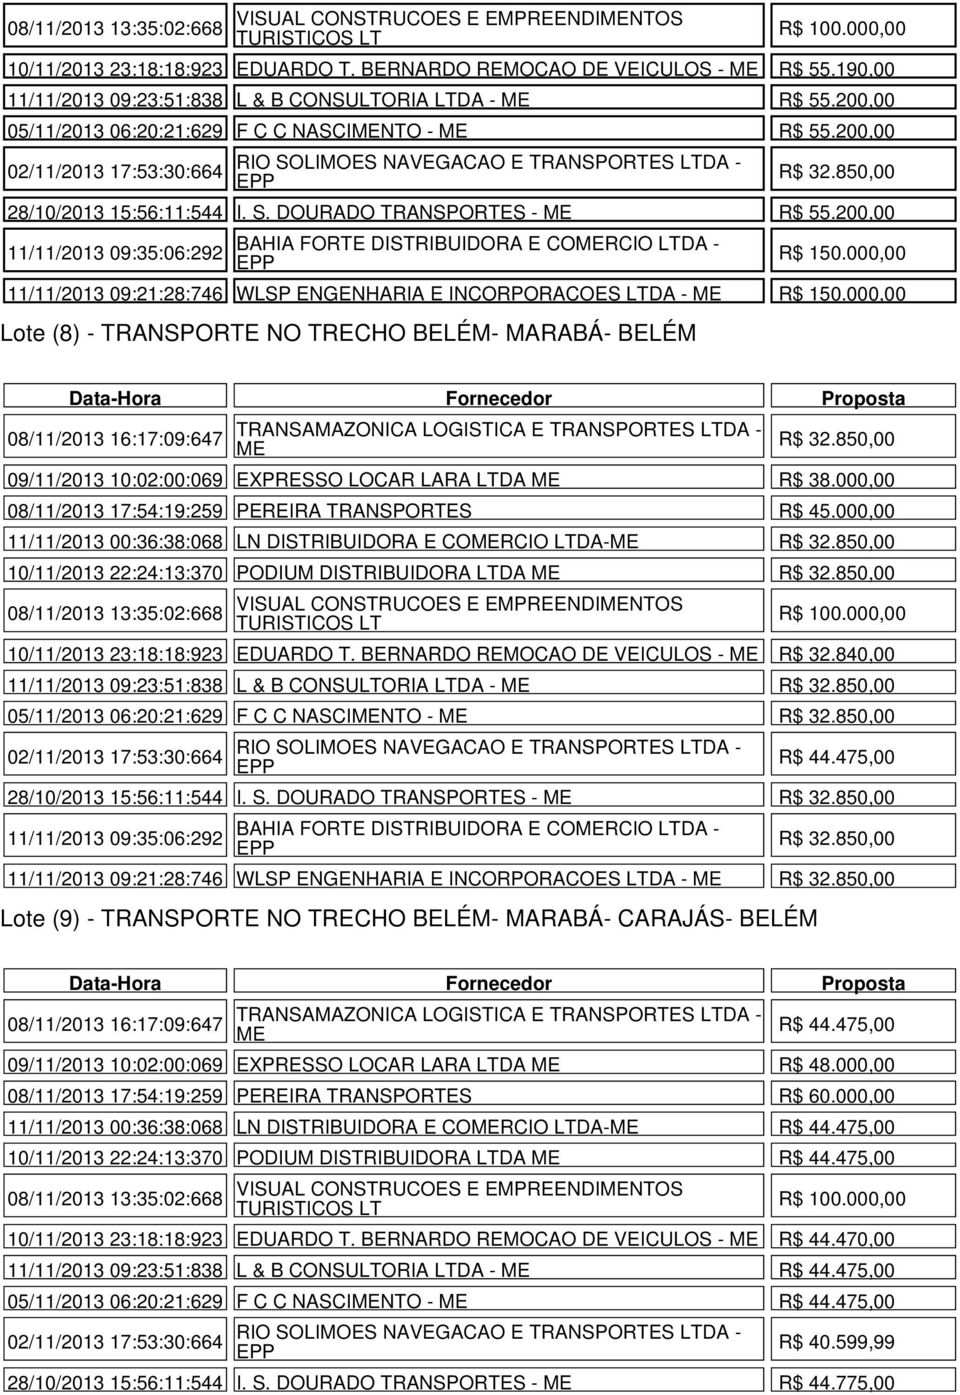 DOURADO TRANSPORTES - R$ 55.200,00 11/11/2013 09:35:06:292 R$ 150.000,00 11/11/2013 09:21:28:746 WLSP ENGENHARIA E INCORPORACOES LTDA - R$ 150.